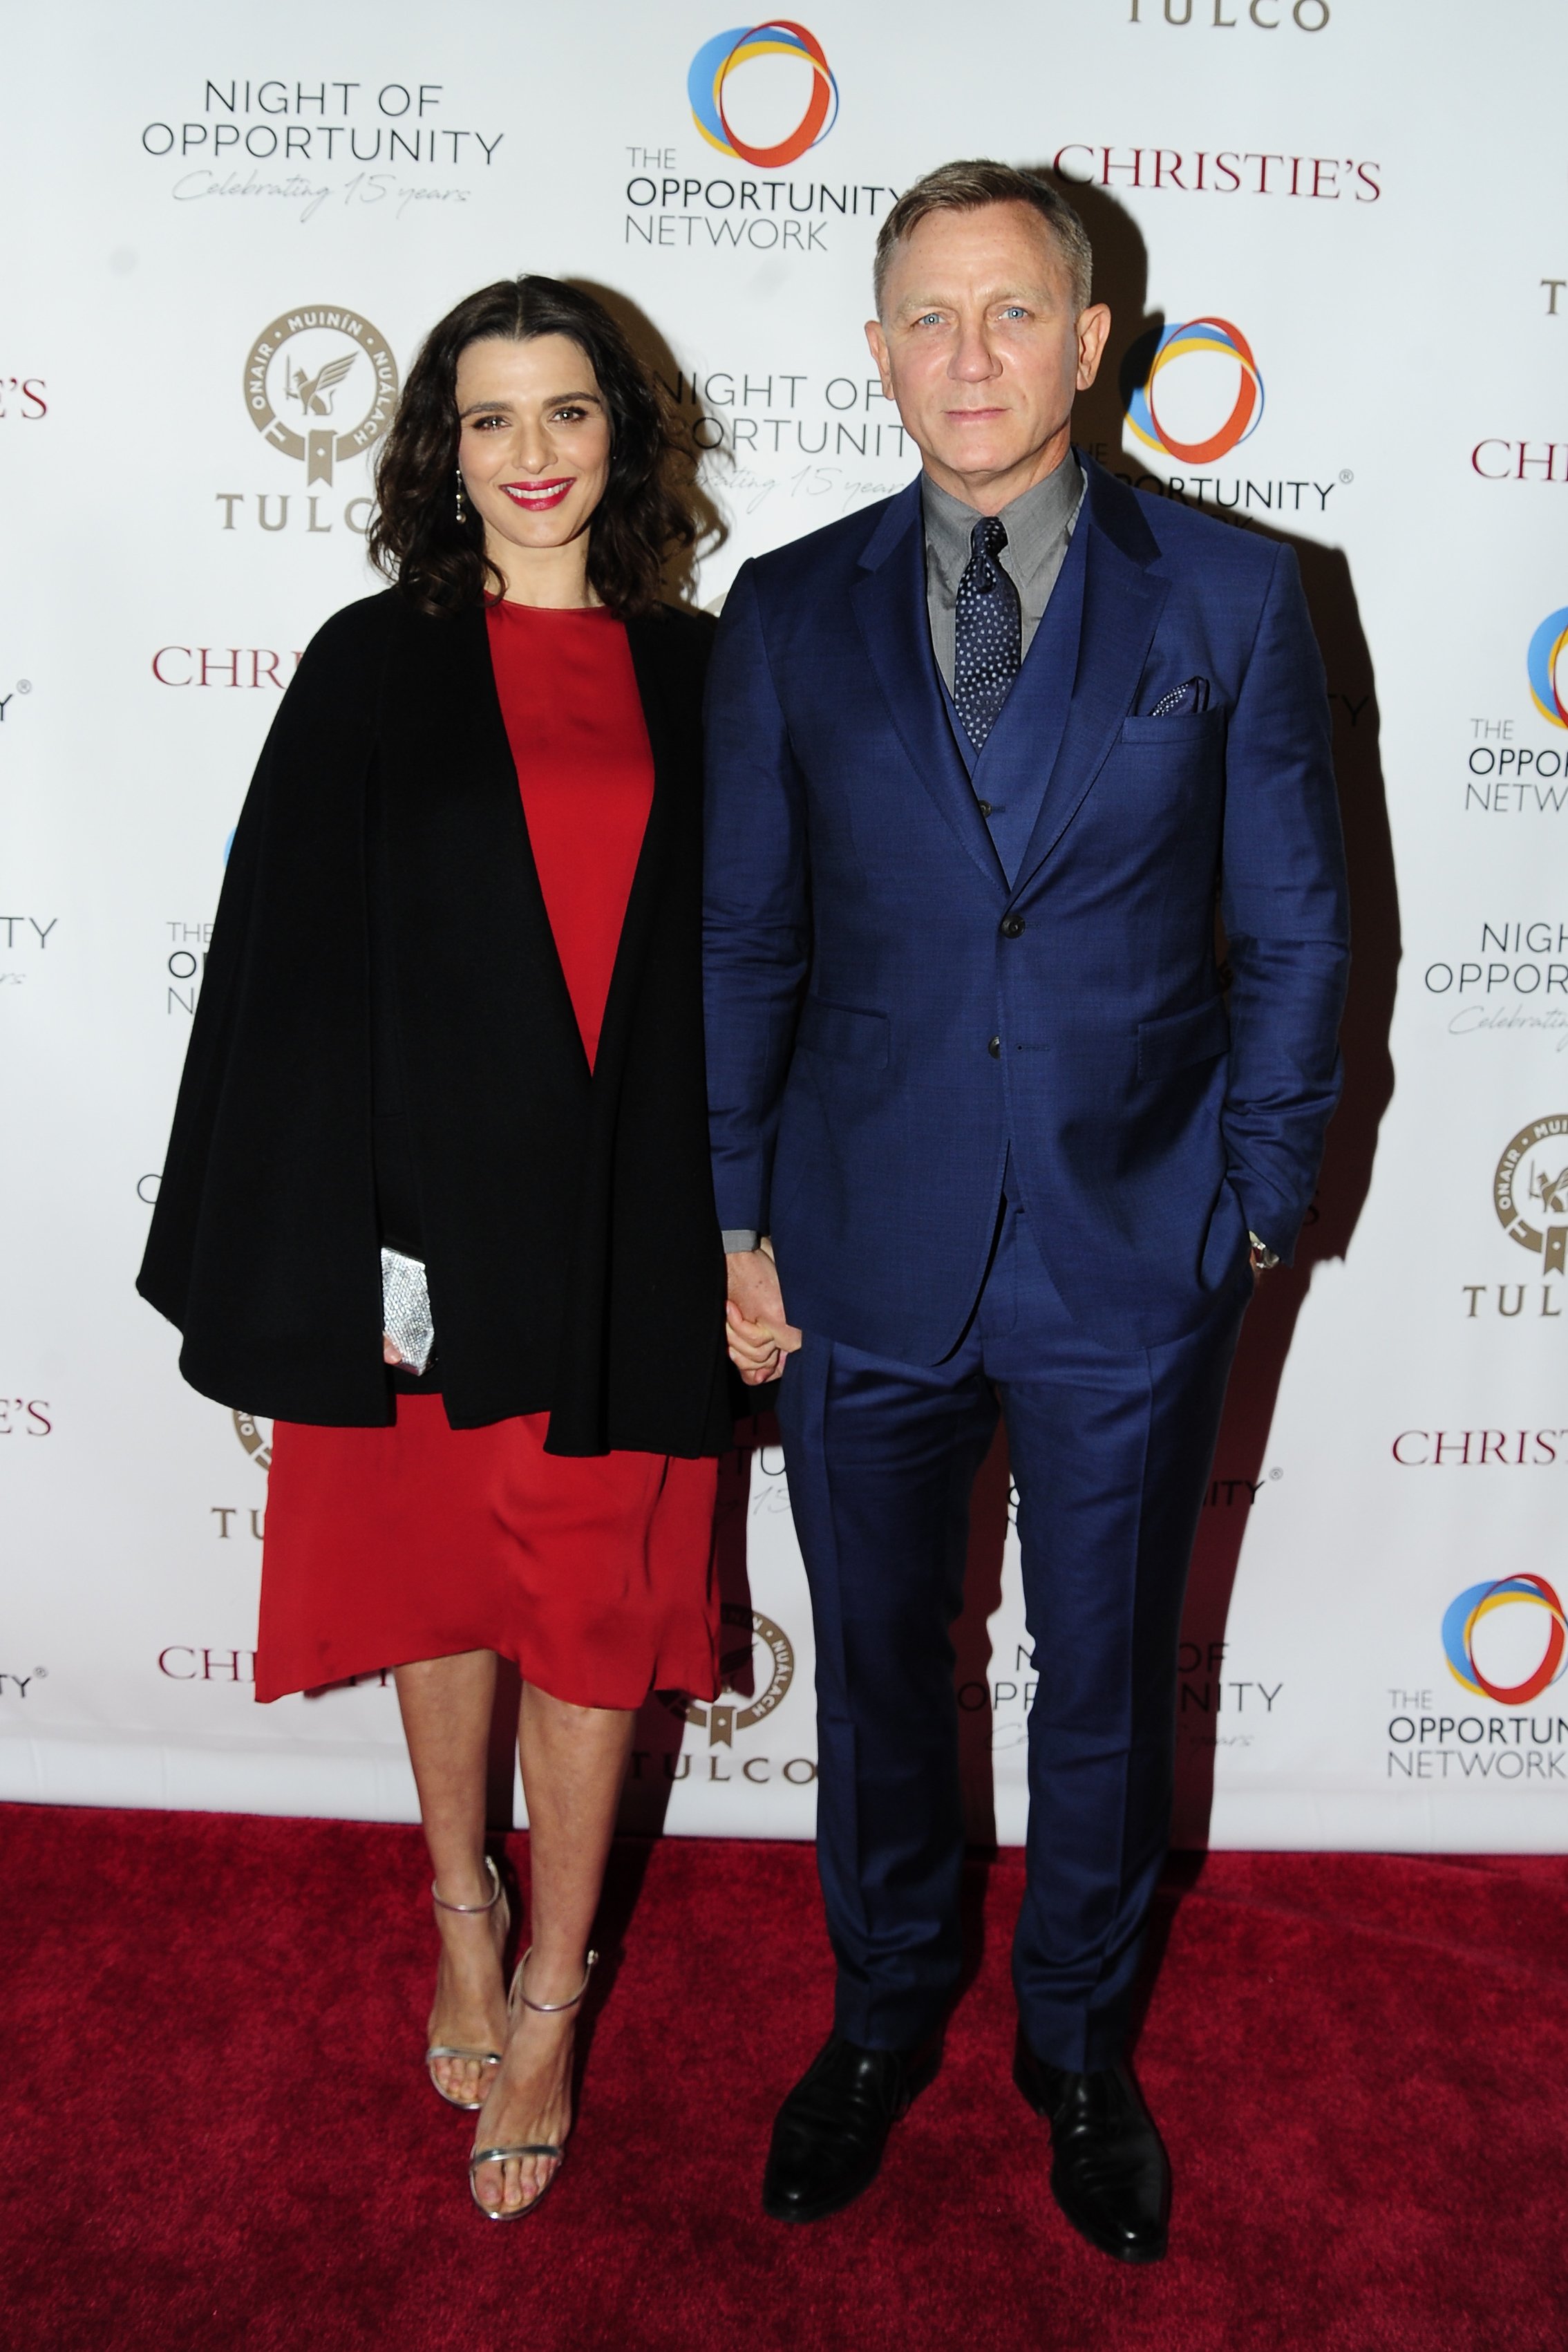 NUEVA YORK, NY - 9 DE ABRIL: Rachel Weisz y Daniel Craig asisten a la 11a Gala Anual de la Noche de Oportunidades de The Opportunity Network en Cipriani Wall Street el 9 de abril de 2018 en la ciudad de Nueva York. I Foto: Getty Images